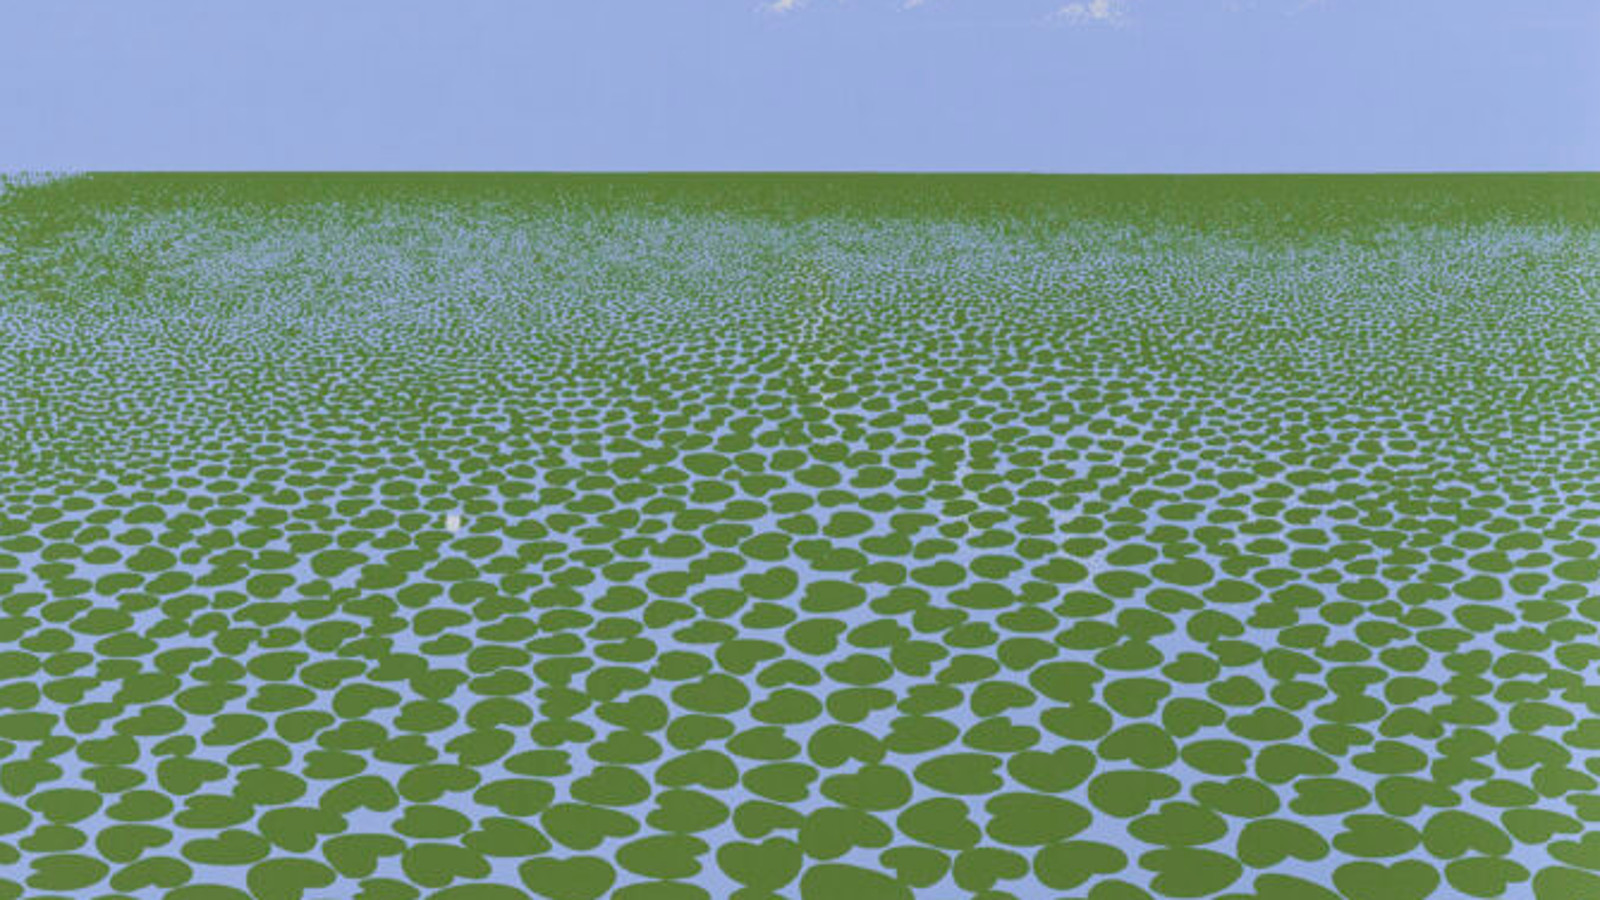 Kuvassa on osa Kimmo Kaivannon teoksesta Kun meri kuolee, jossa on sinisellä pohjalla vihreitä sydämen muotoisia lumpeenlehtiä.  Yläosassa on sinistä taivasta.